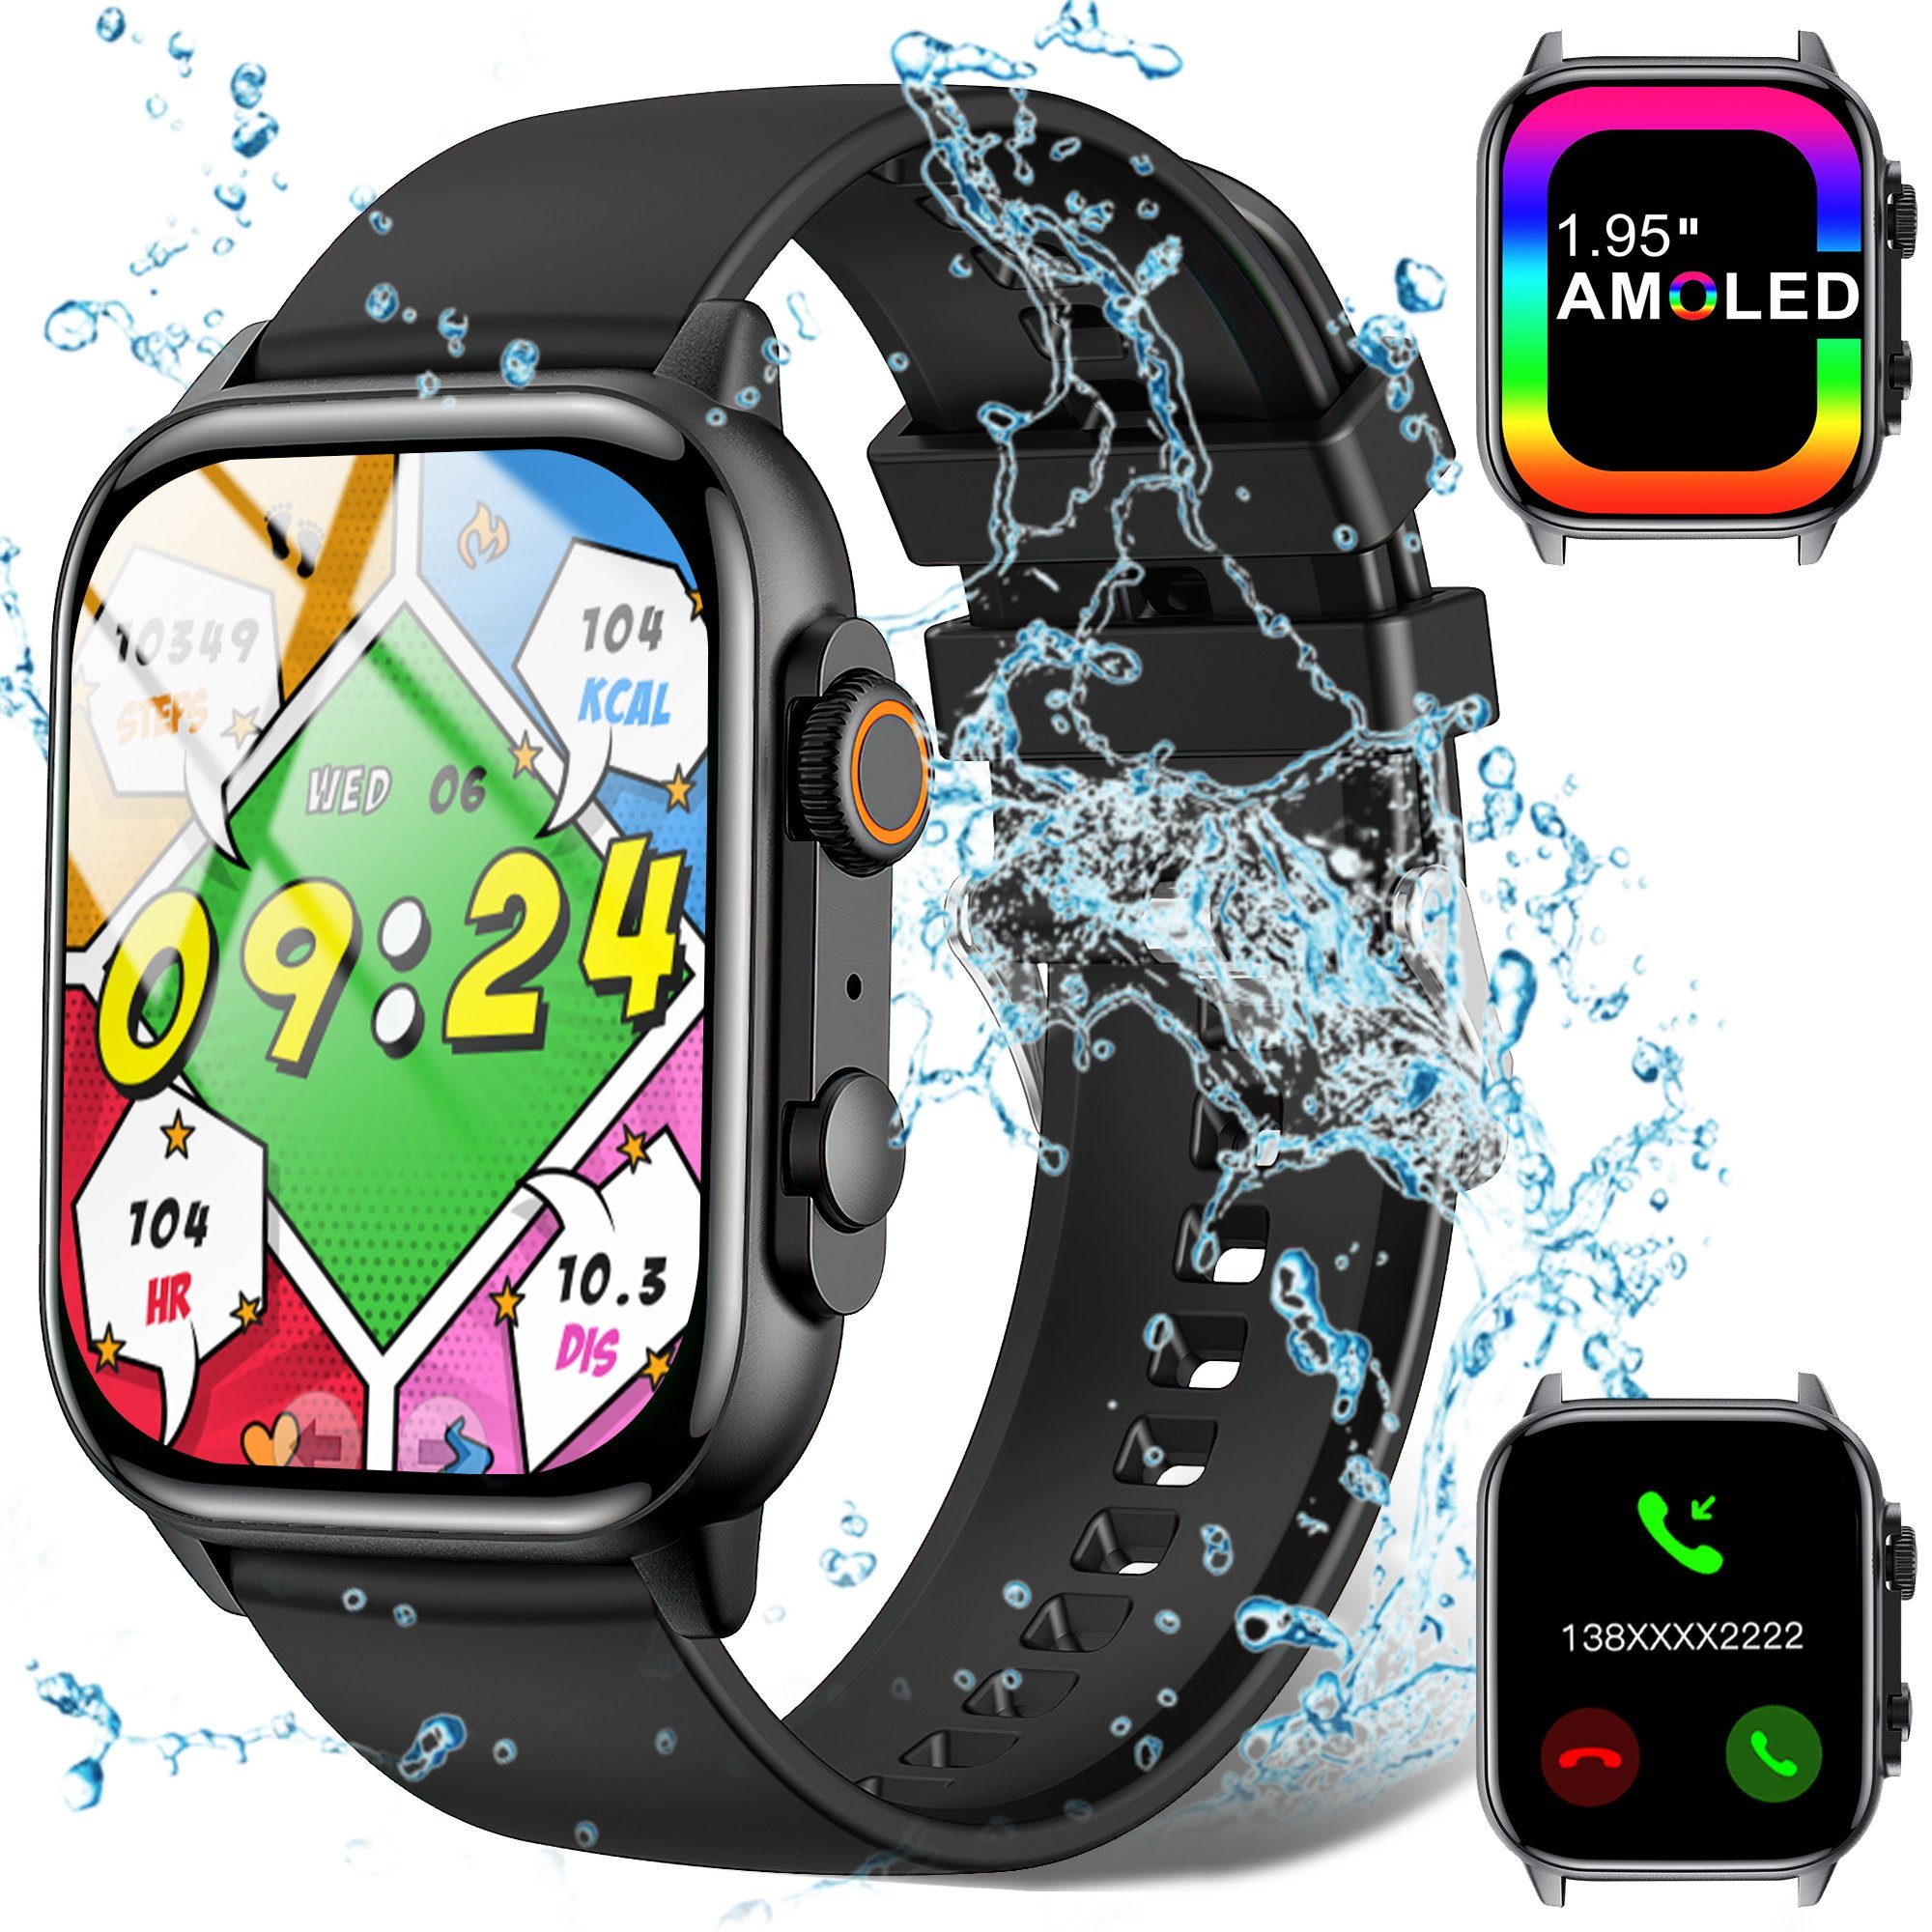 Vbrisi Smartwatch Damen Herren Smartwatch, Fitness Tracker Uhr mit Anrufe Smartwatch (Fitnessuhr mit Telefonfunktion, IP68 Wasserdicht,1.95